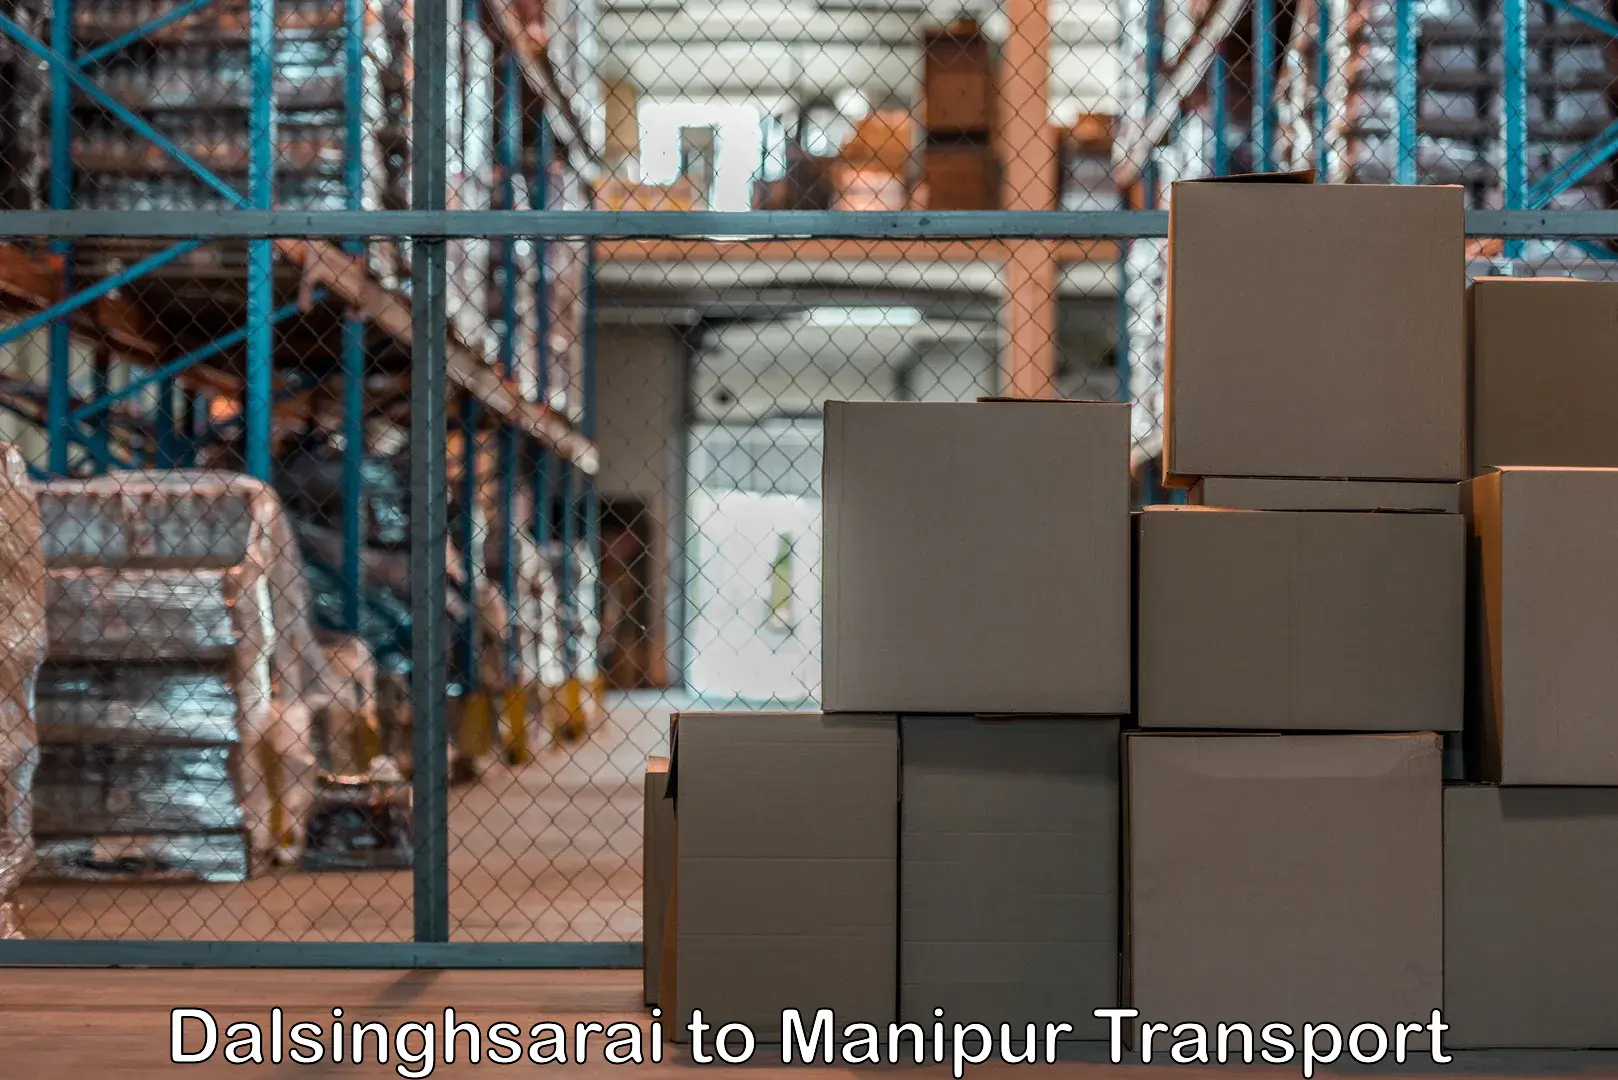 Shipping services Dalsinghsarai to Churachandpur